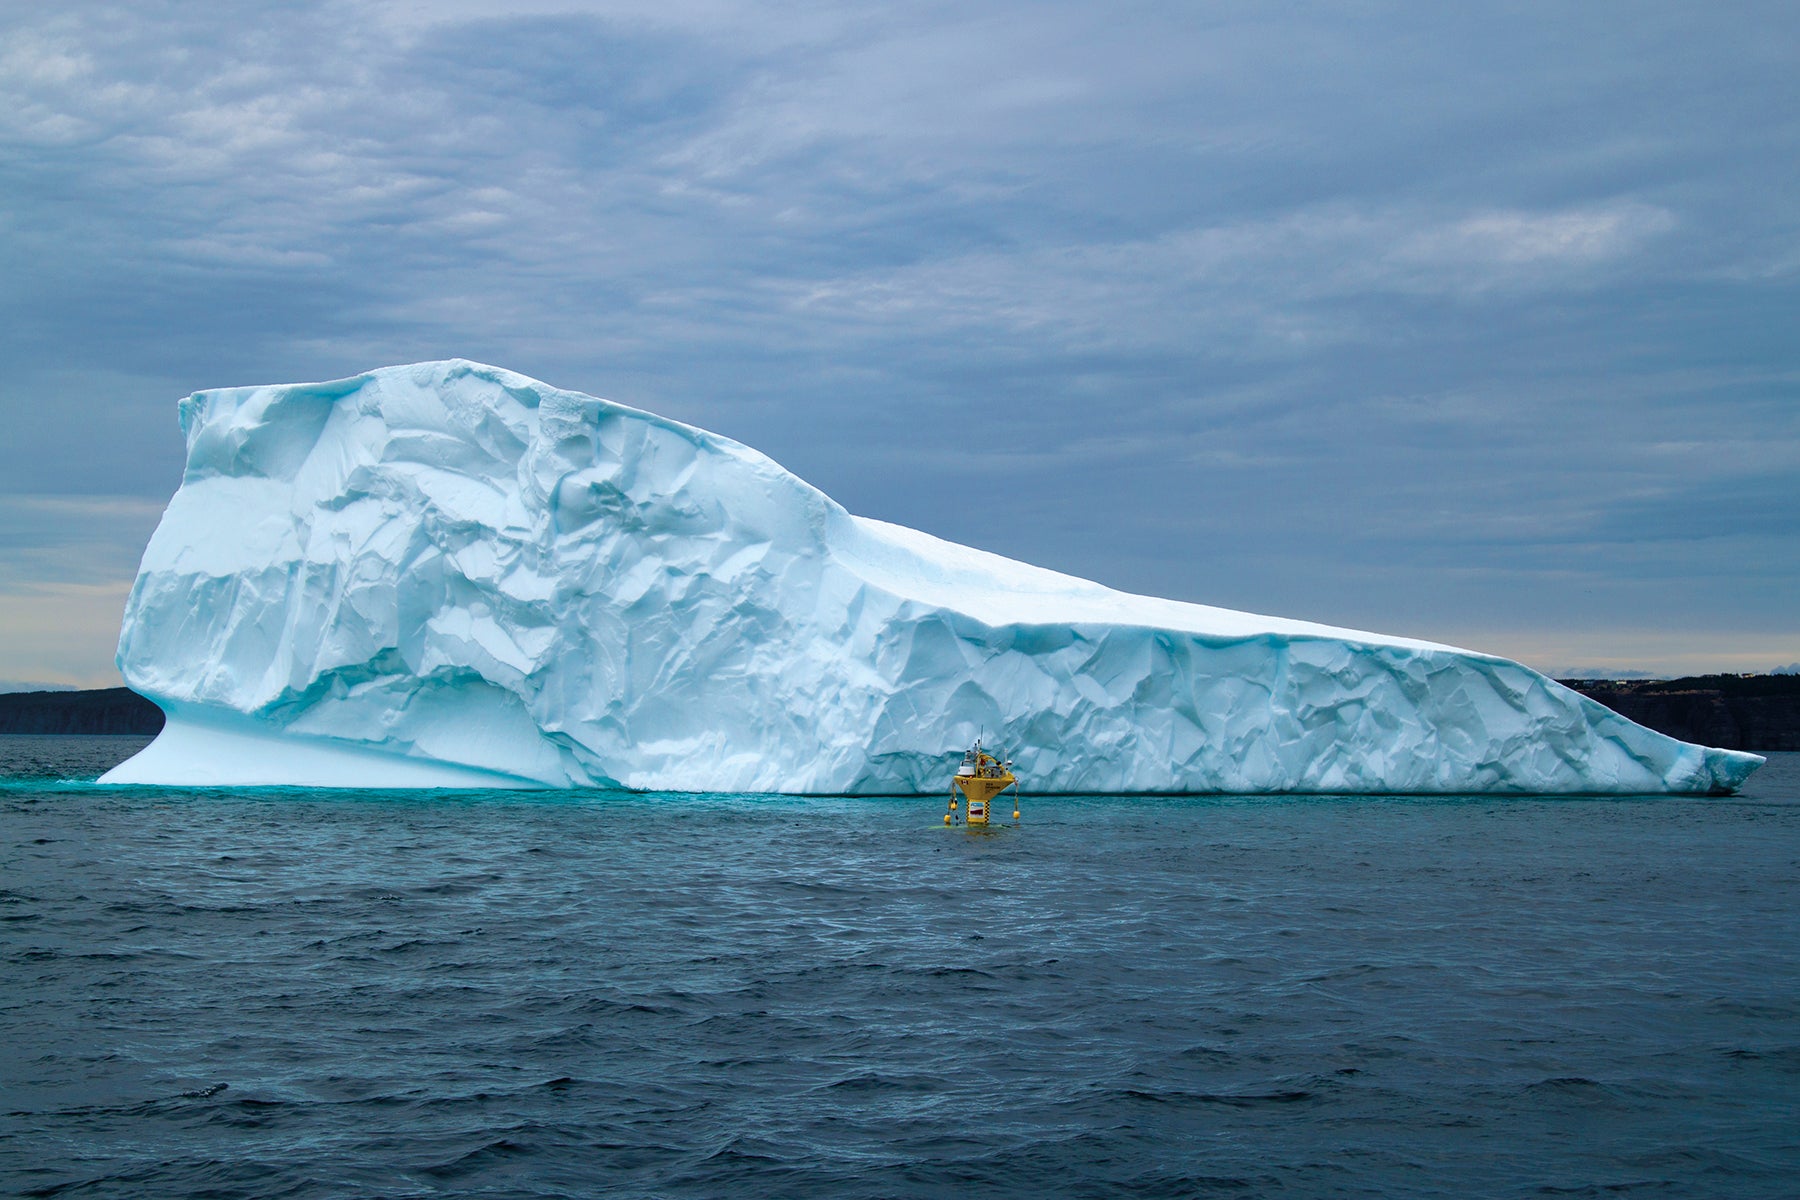 Iceberg 1 altered